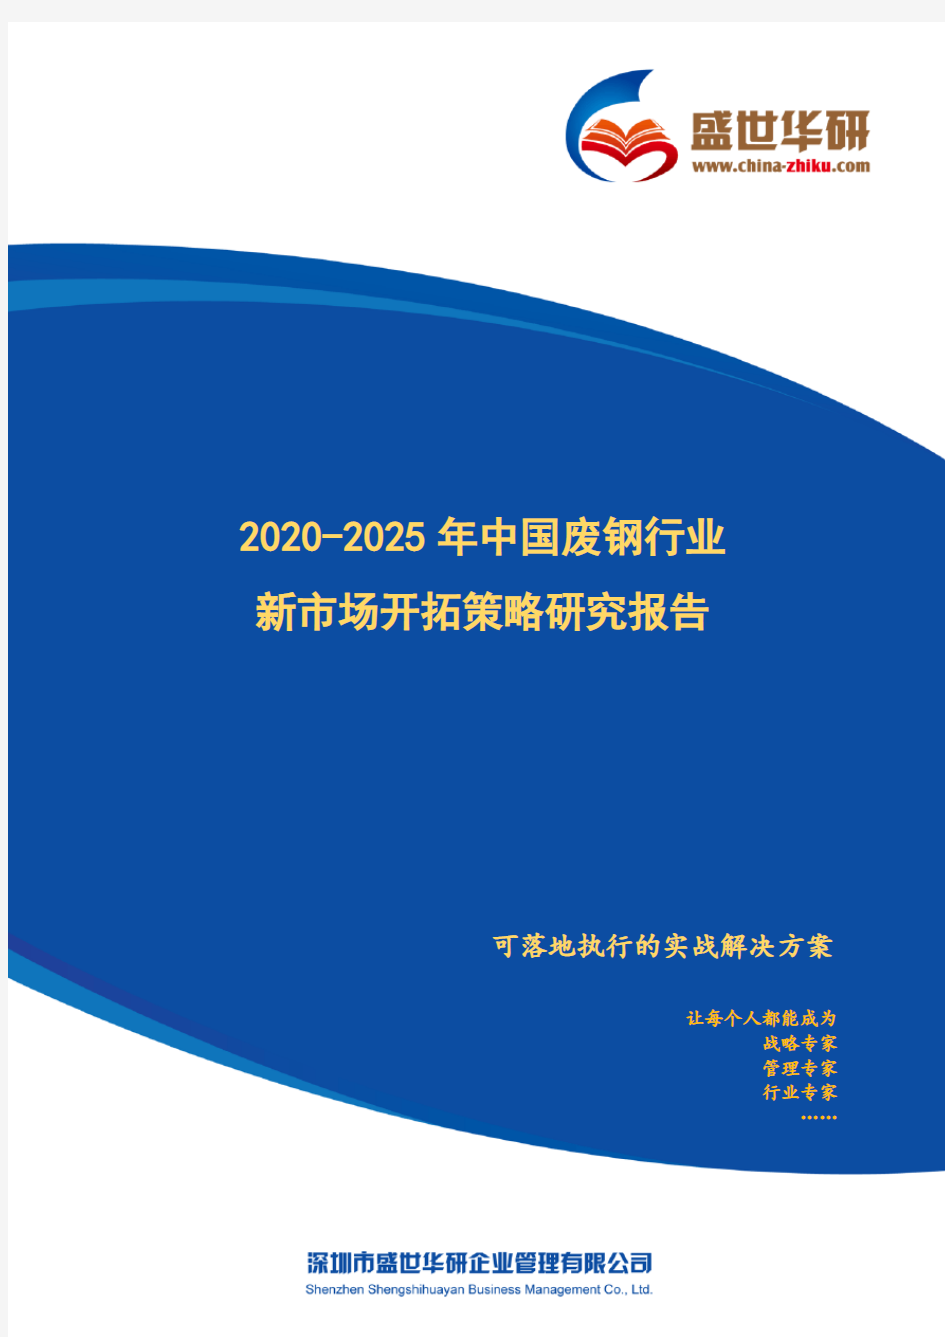 【完整版】2020-2025年中国废钢行业新市场开拓策略研究报告